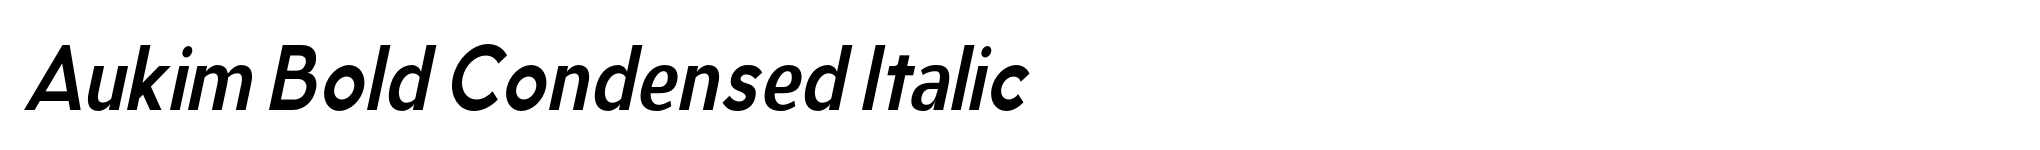 Aukim Bold Condensed Italic image